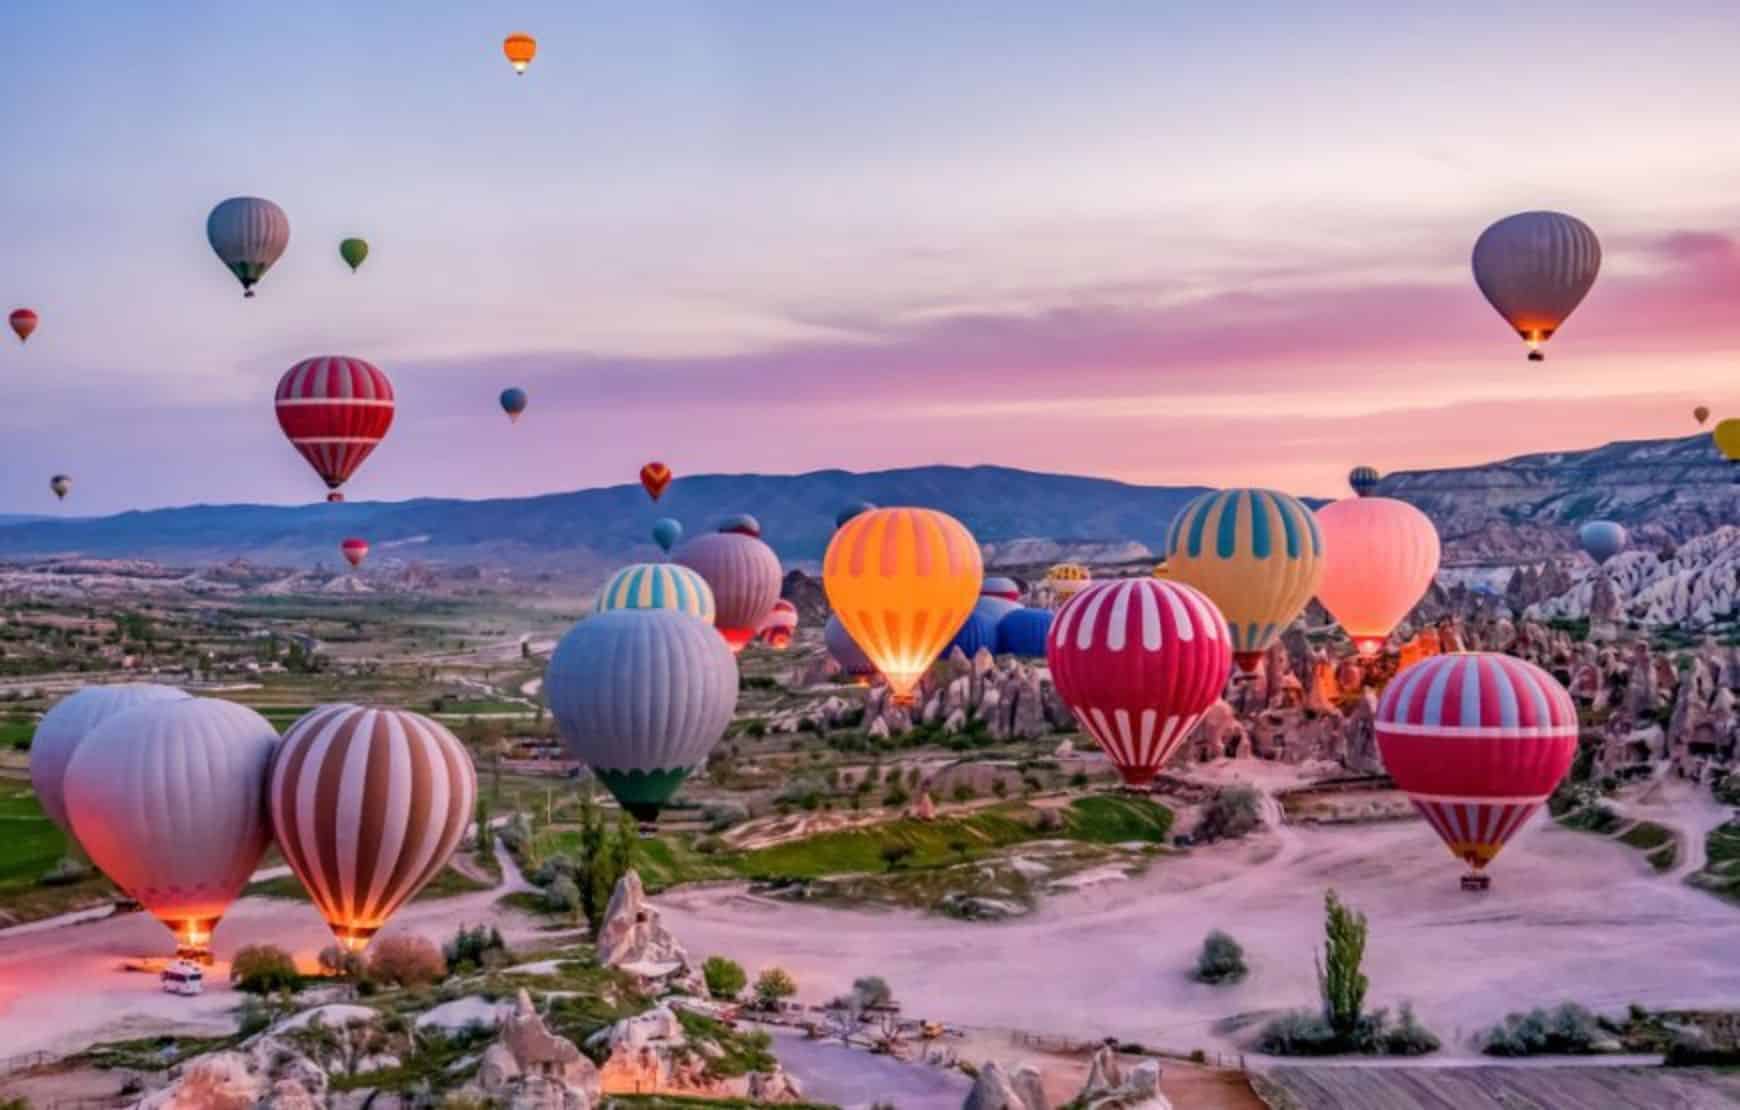 Hot Air Balloon Launch Site in Cappadocia